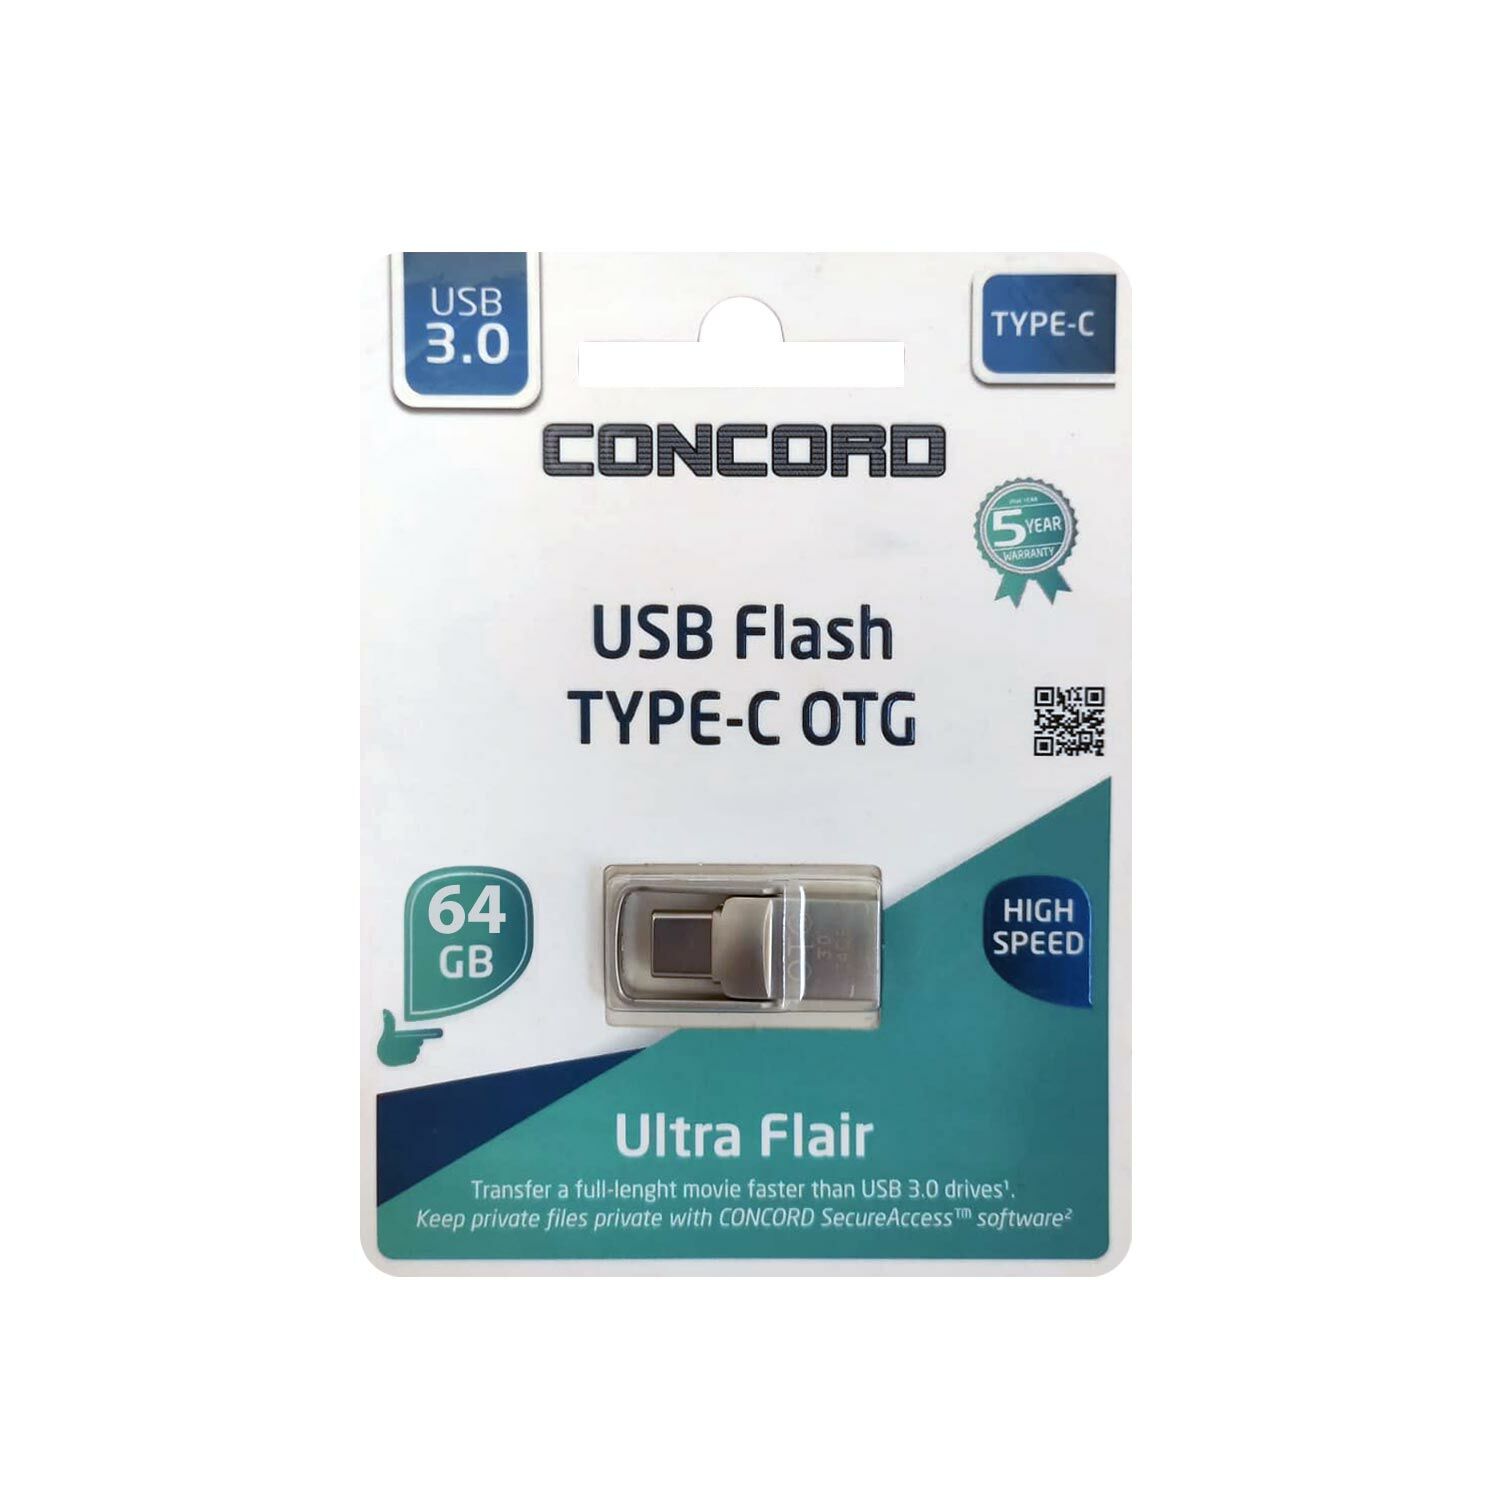 USB FLASH BELLEK 64GB 3.0 OTG TYPE-C METAL MİNİ CONCORD C-OTGT64